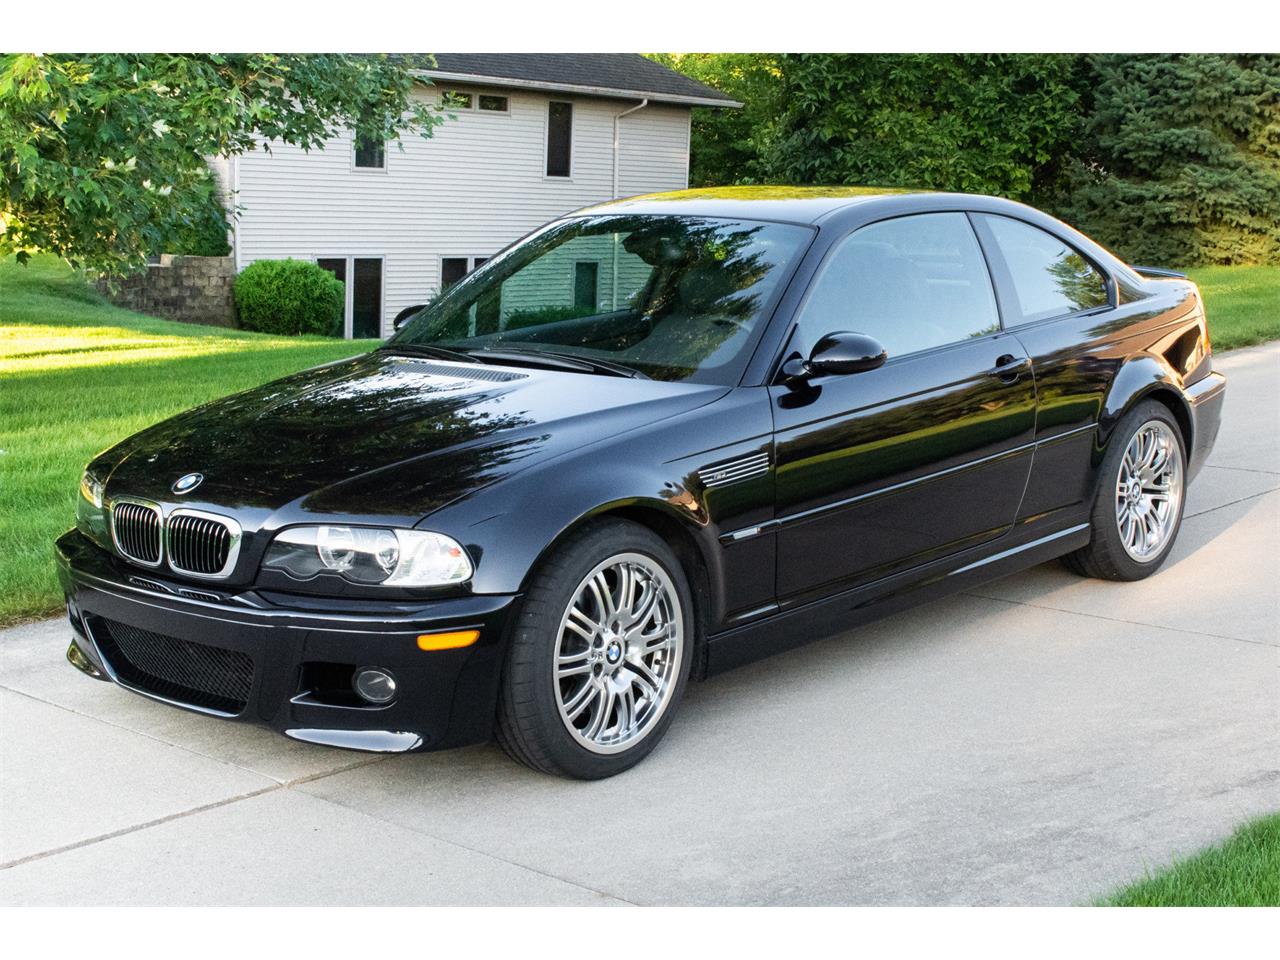 2003 BMW M3 for Sale | ClassicCars.com | CC-1252619